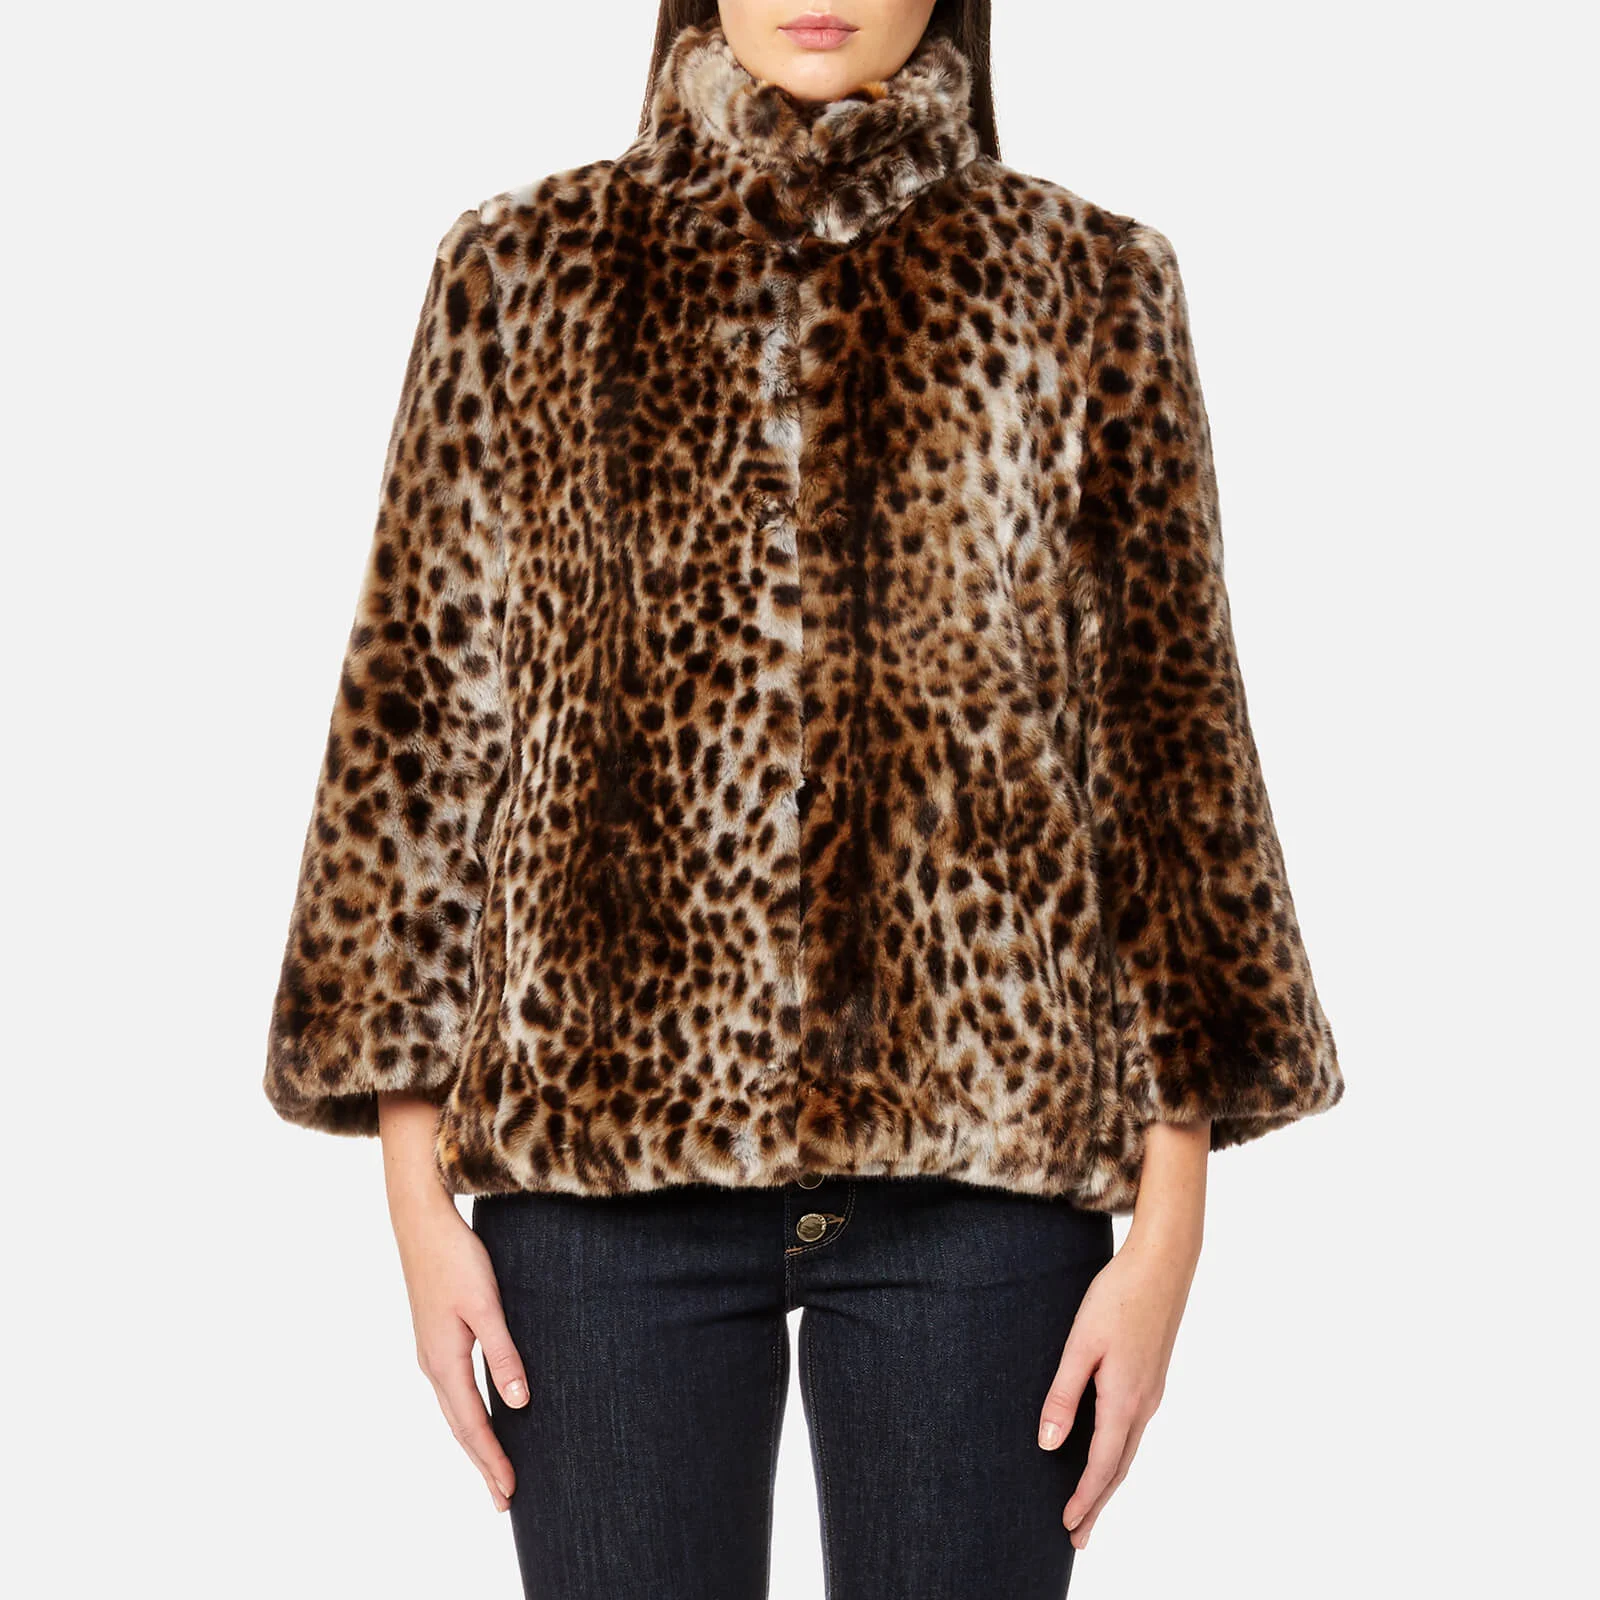 MICHAEL MICHAEL KORS Women's Leopard Print Faux Fur Coat - Leopard Print Fur Image 1